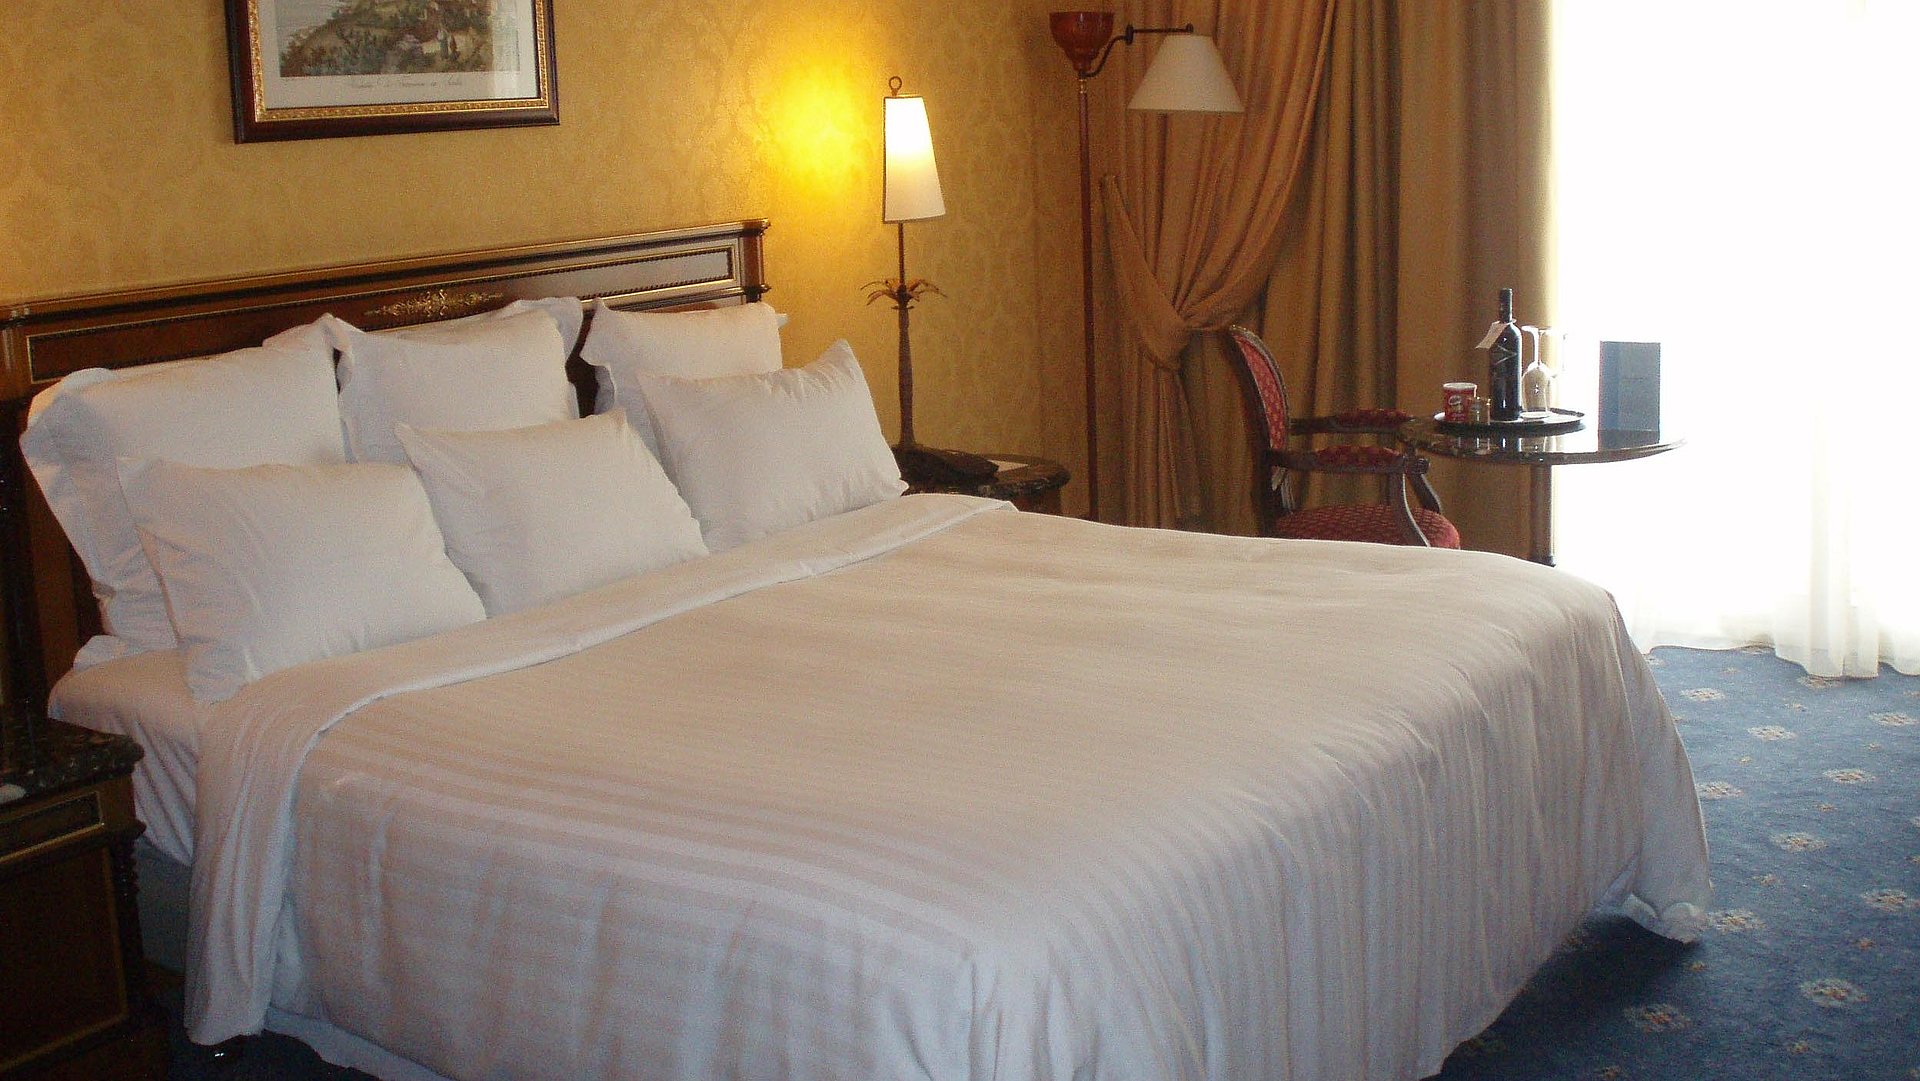 Pauschalen für das Wochenende in Franken - sehr ordentliches Hotelzimmer mit großem Bett, warmer Nachtlampe und mittelgroßem Wandgemälde 